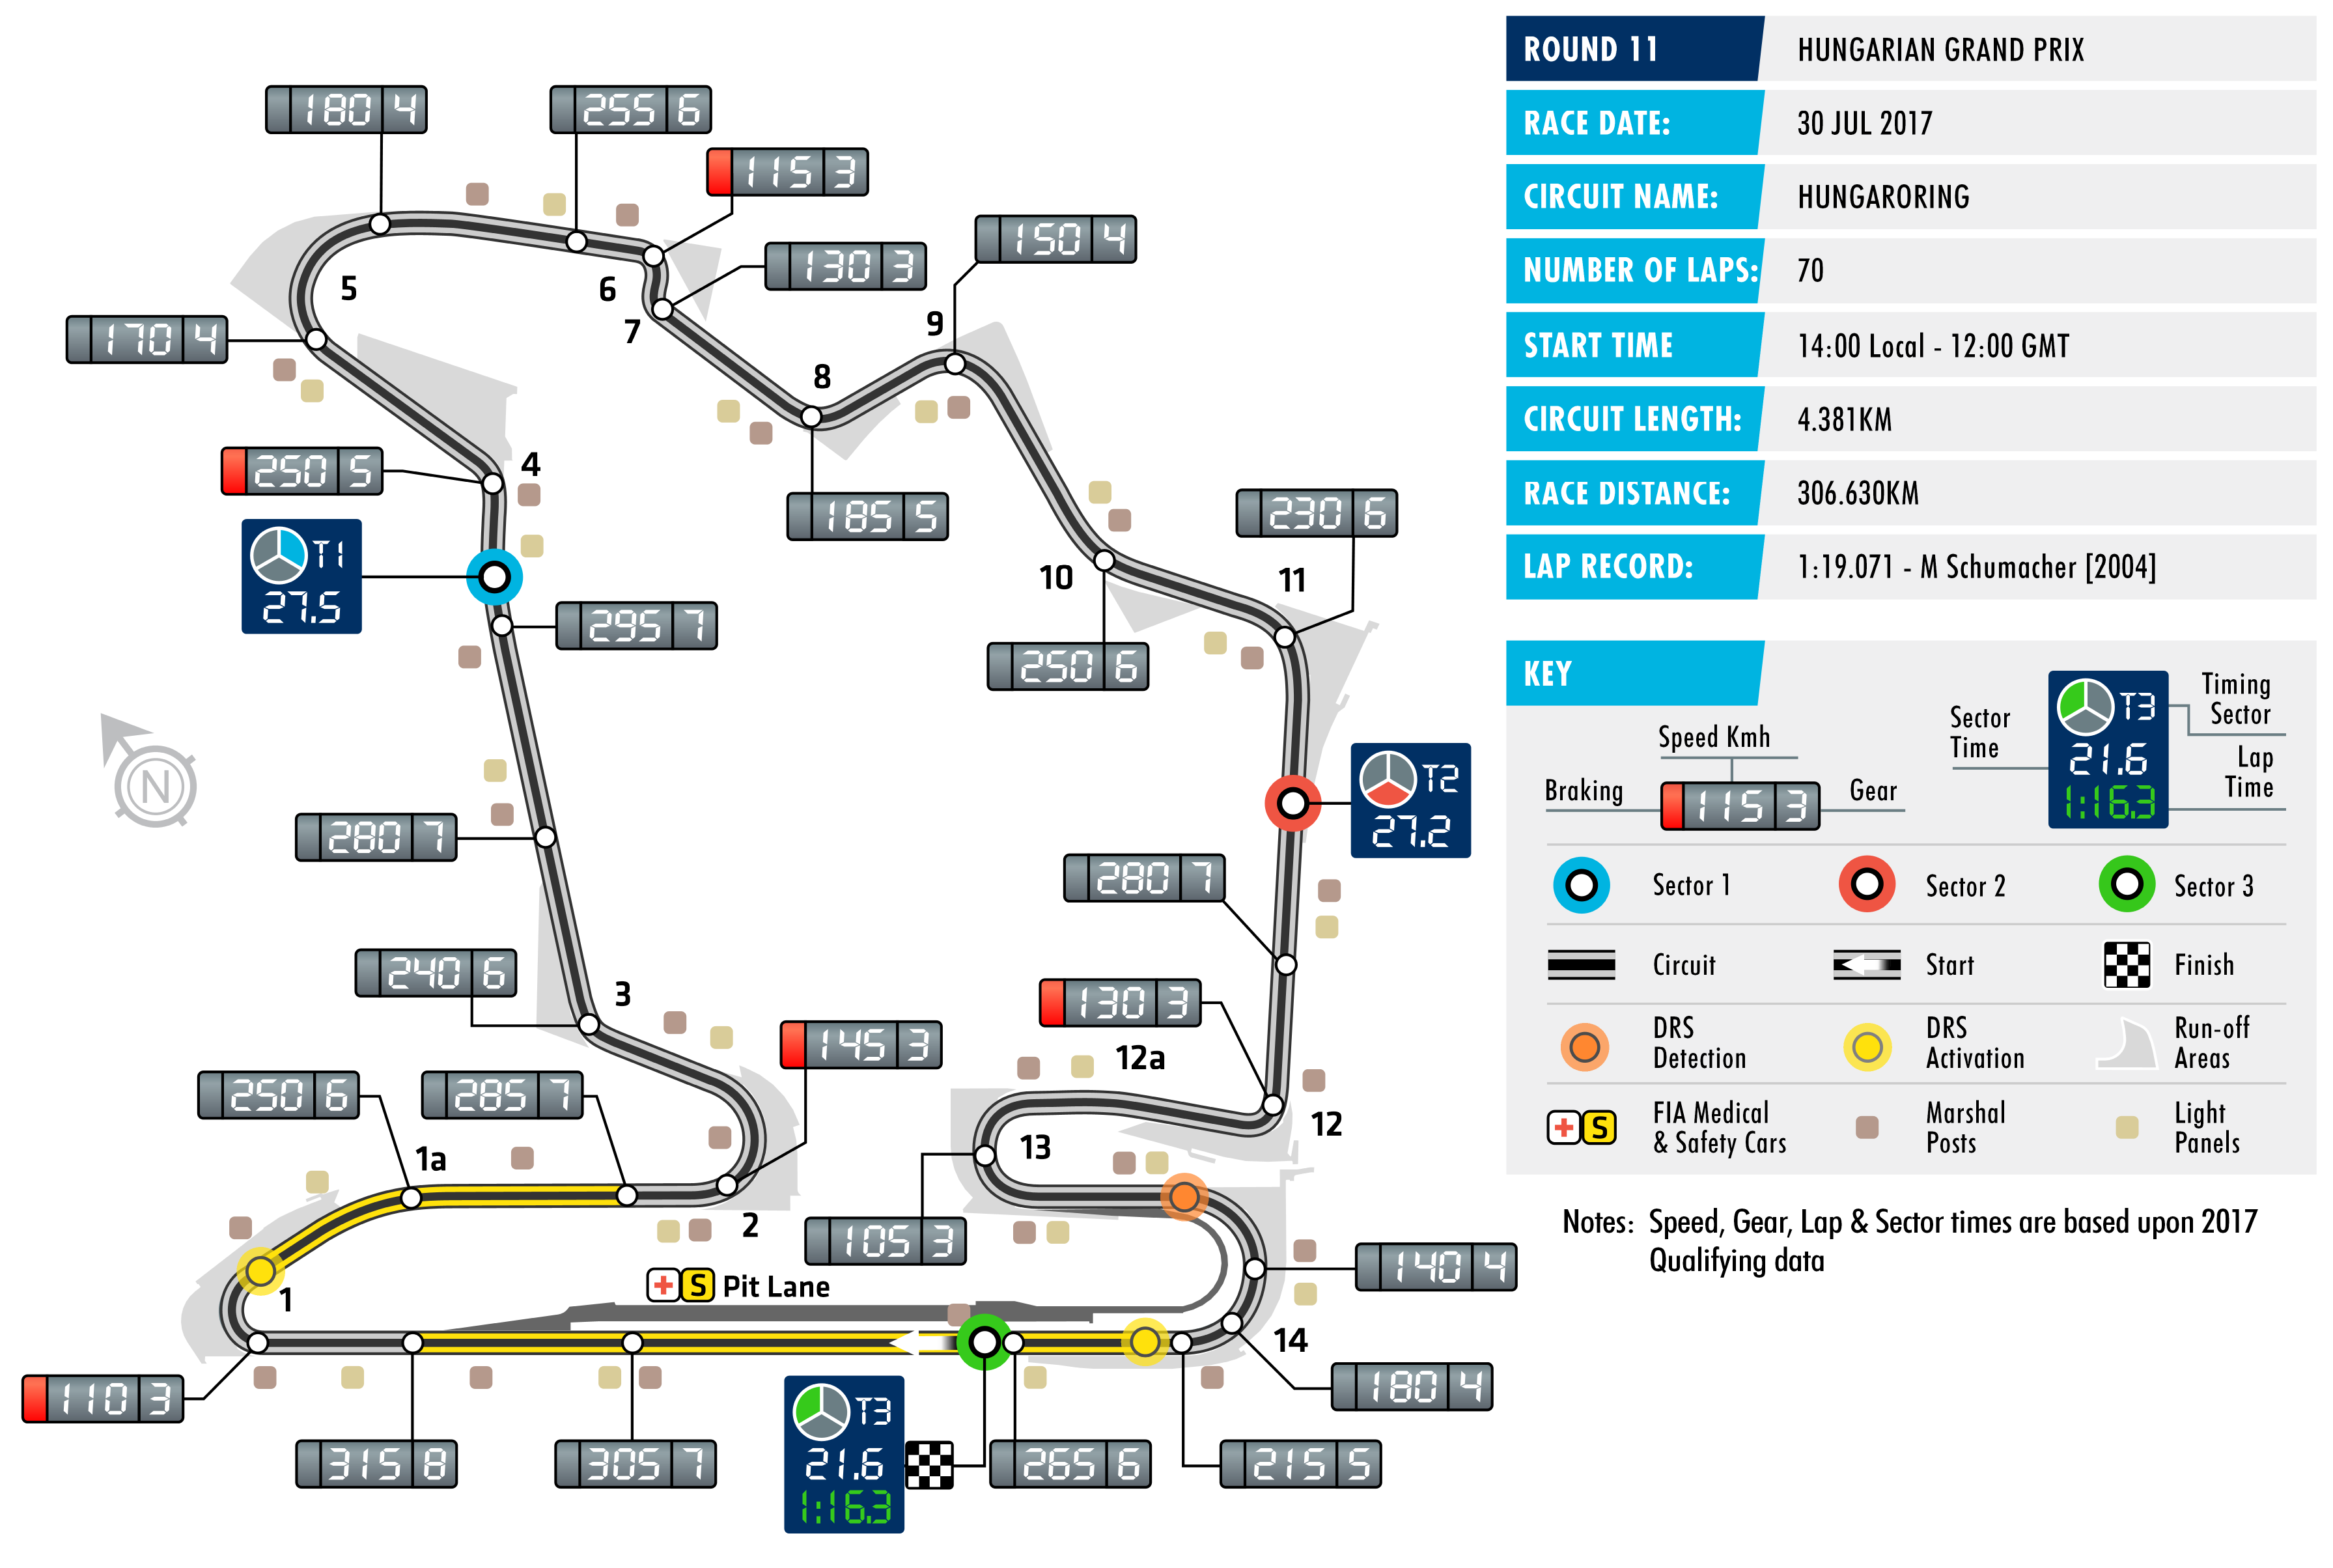 2017 Hungarian Grand Prix - Circuit Map